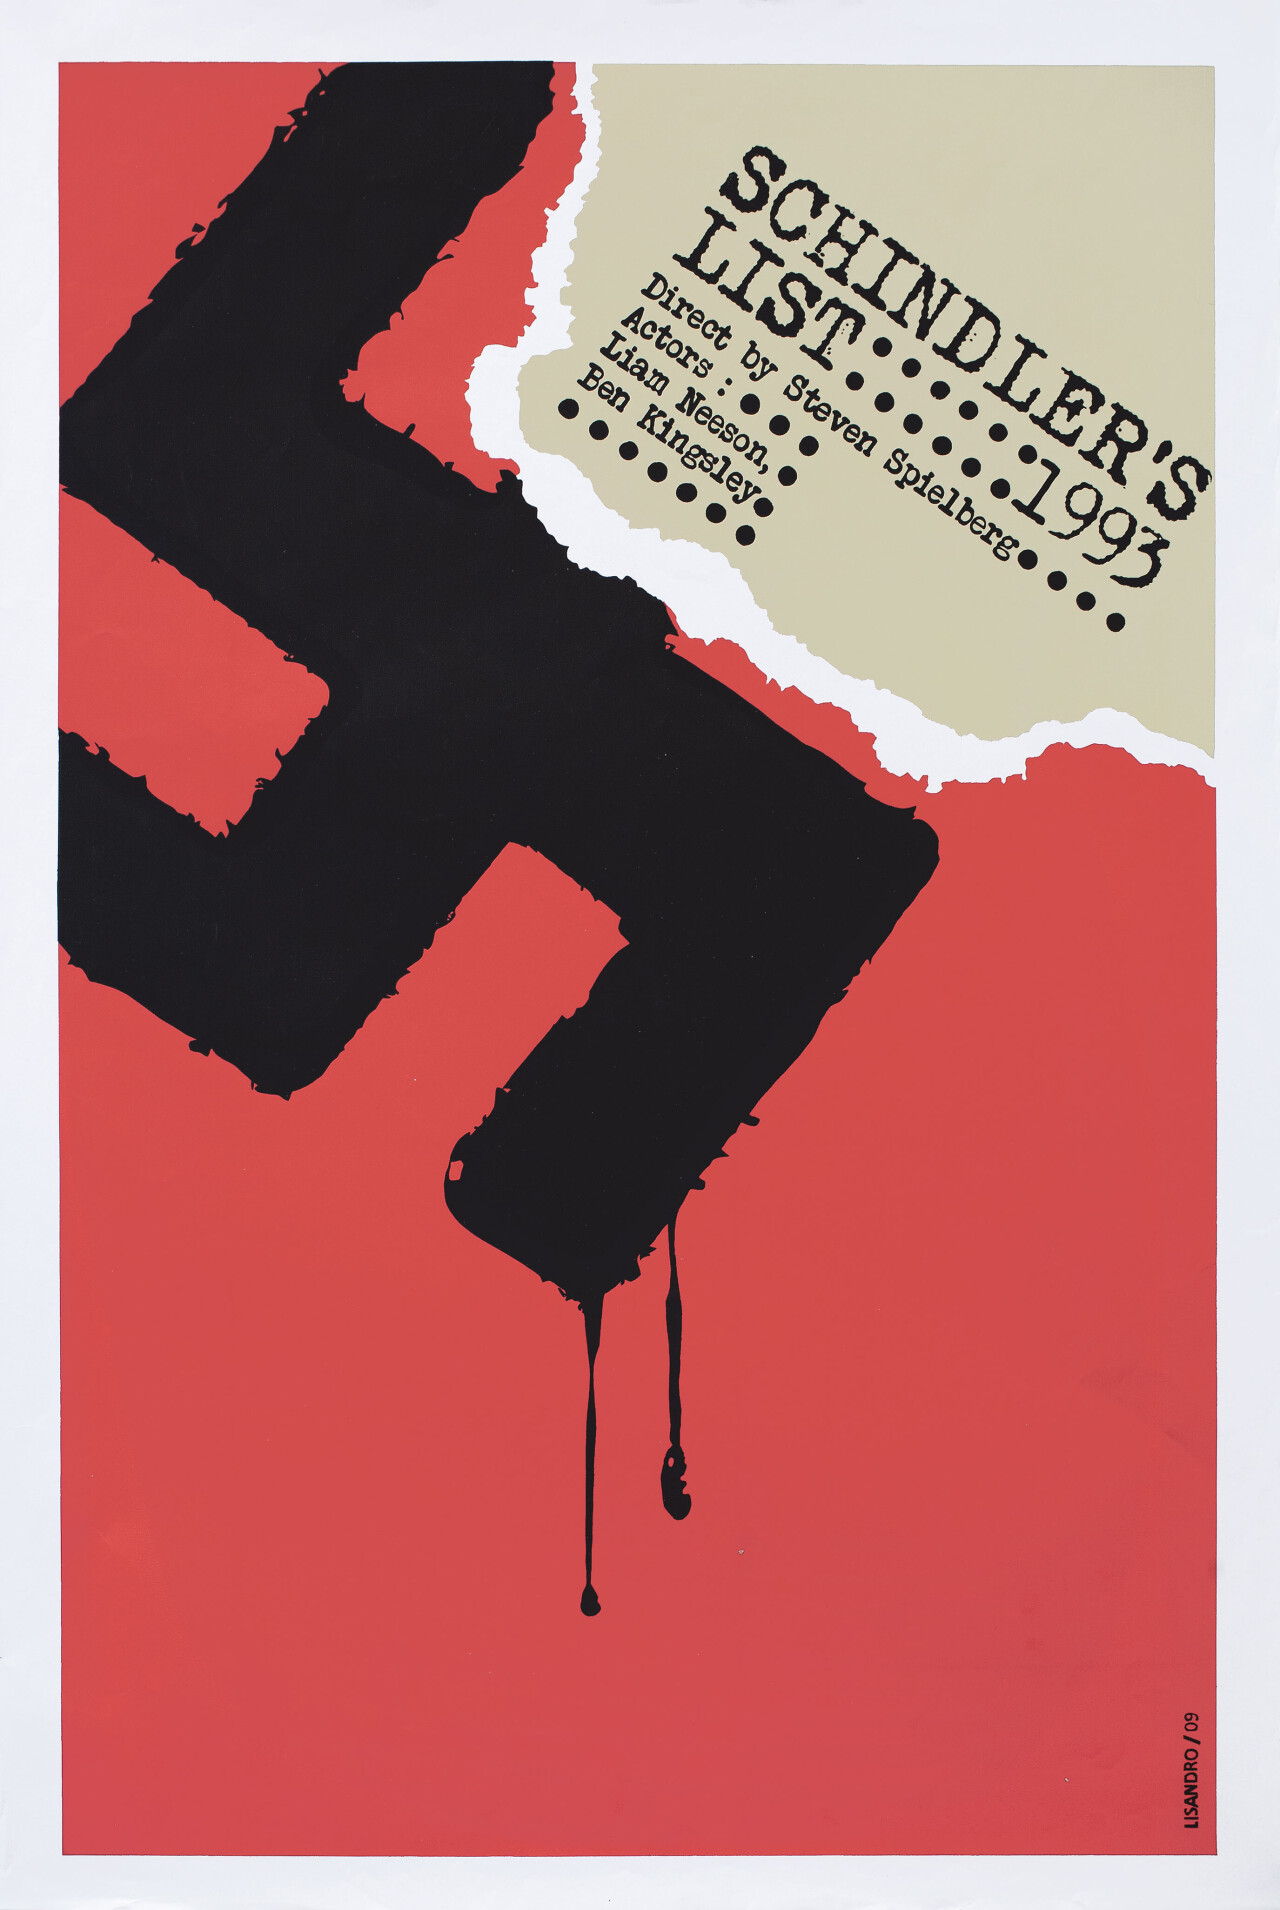 Список Шиндлера (Schindlers List, 1993), режиссёр Стивен Спилберг, минималистичный постер к фильму (Куба, 2009 год), автор Лисандро